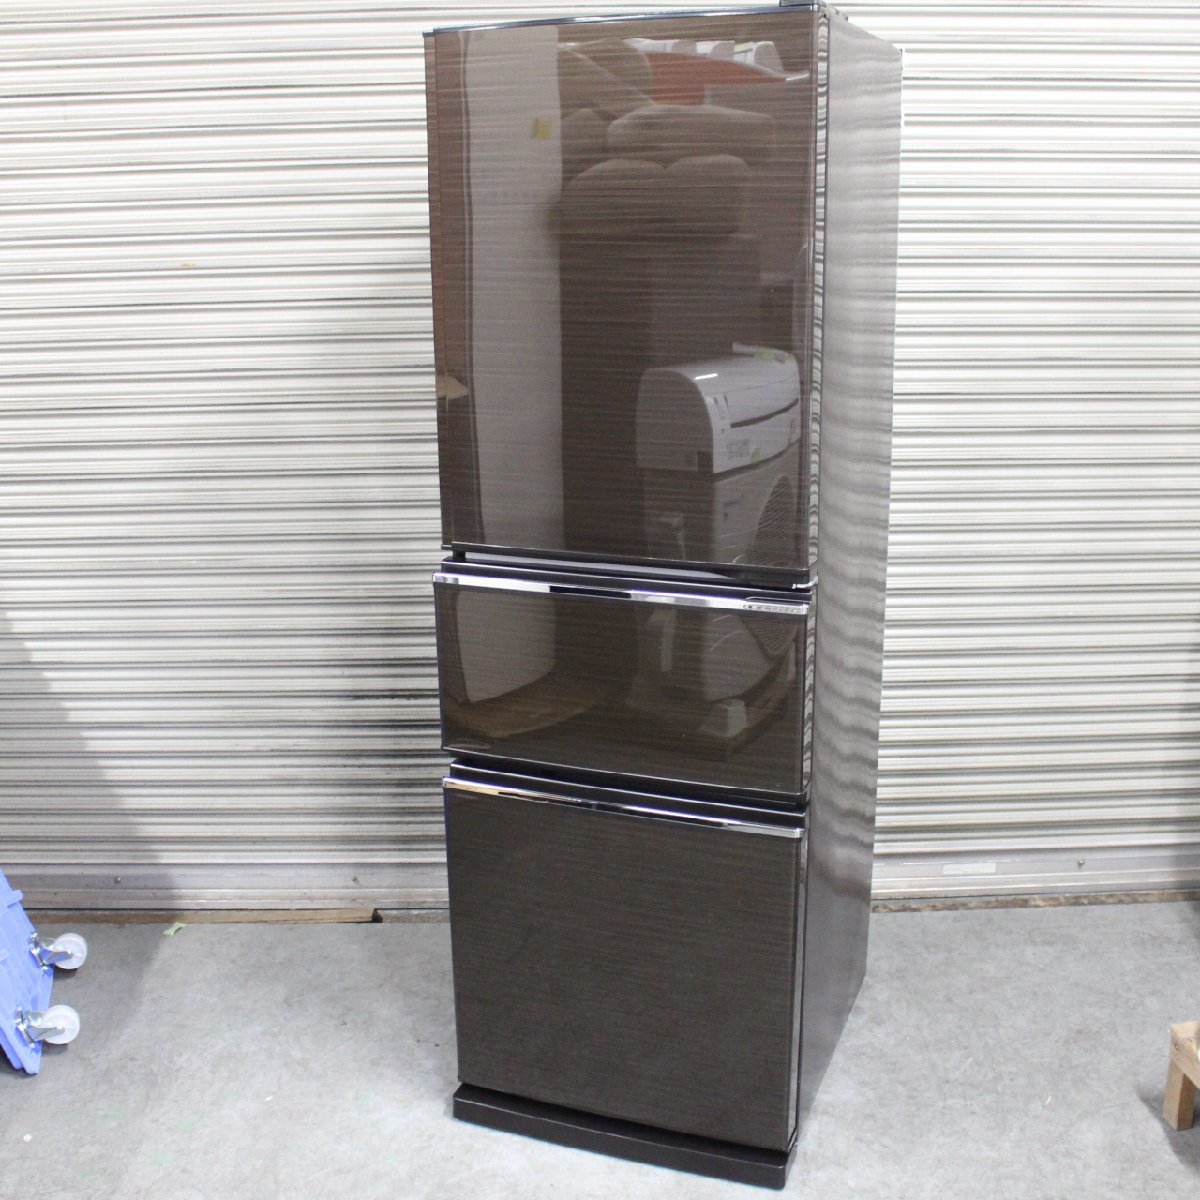 東京都中野区にて 三菱 冷凍冷蔵庫 MR-CX27D-BR 2019年製 を出張買取させて頂きました。